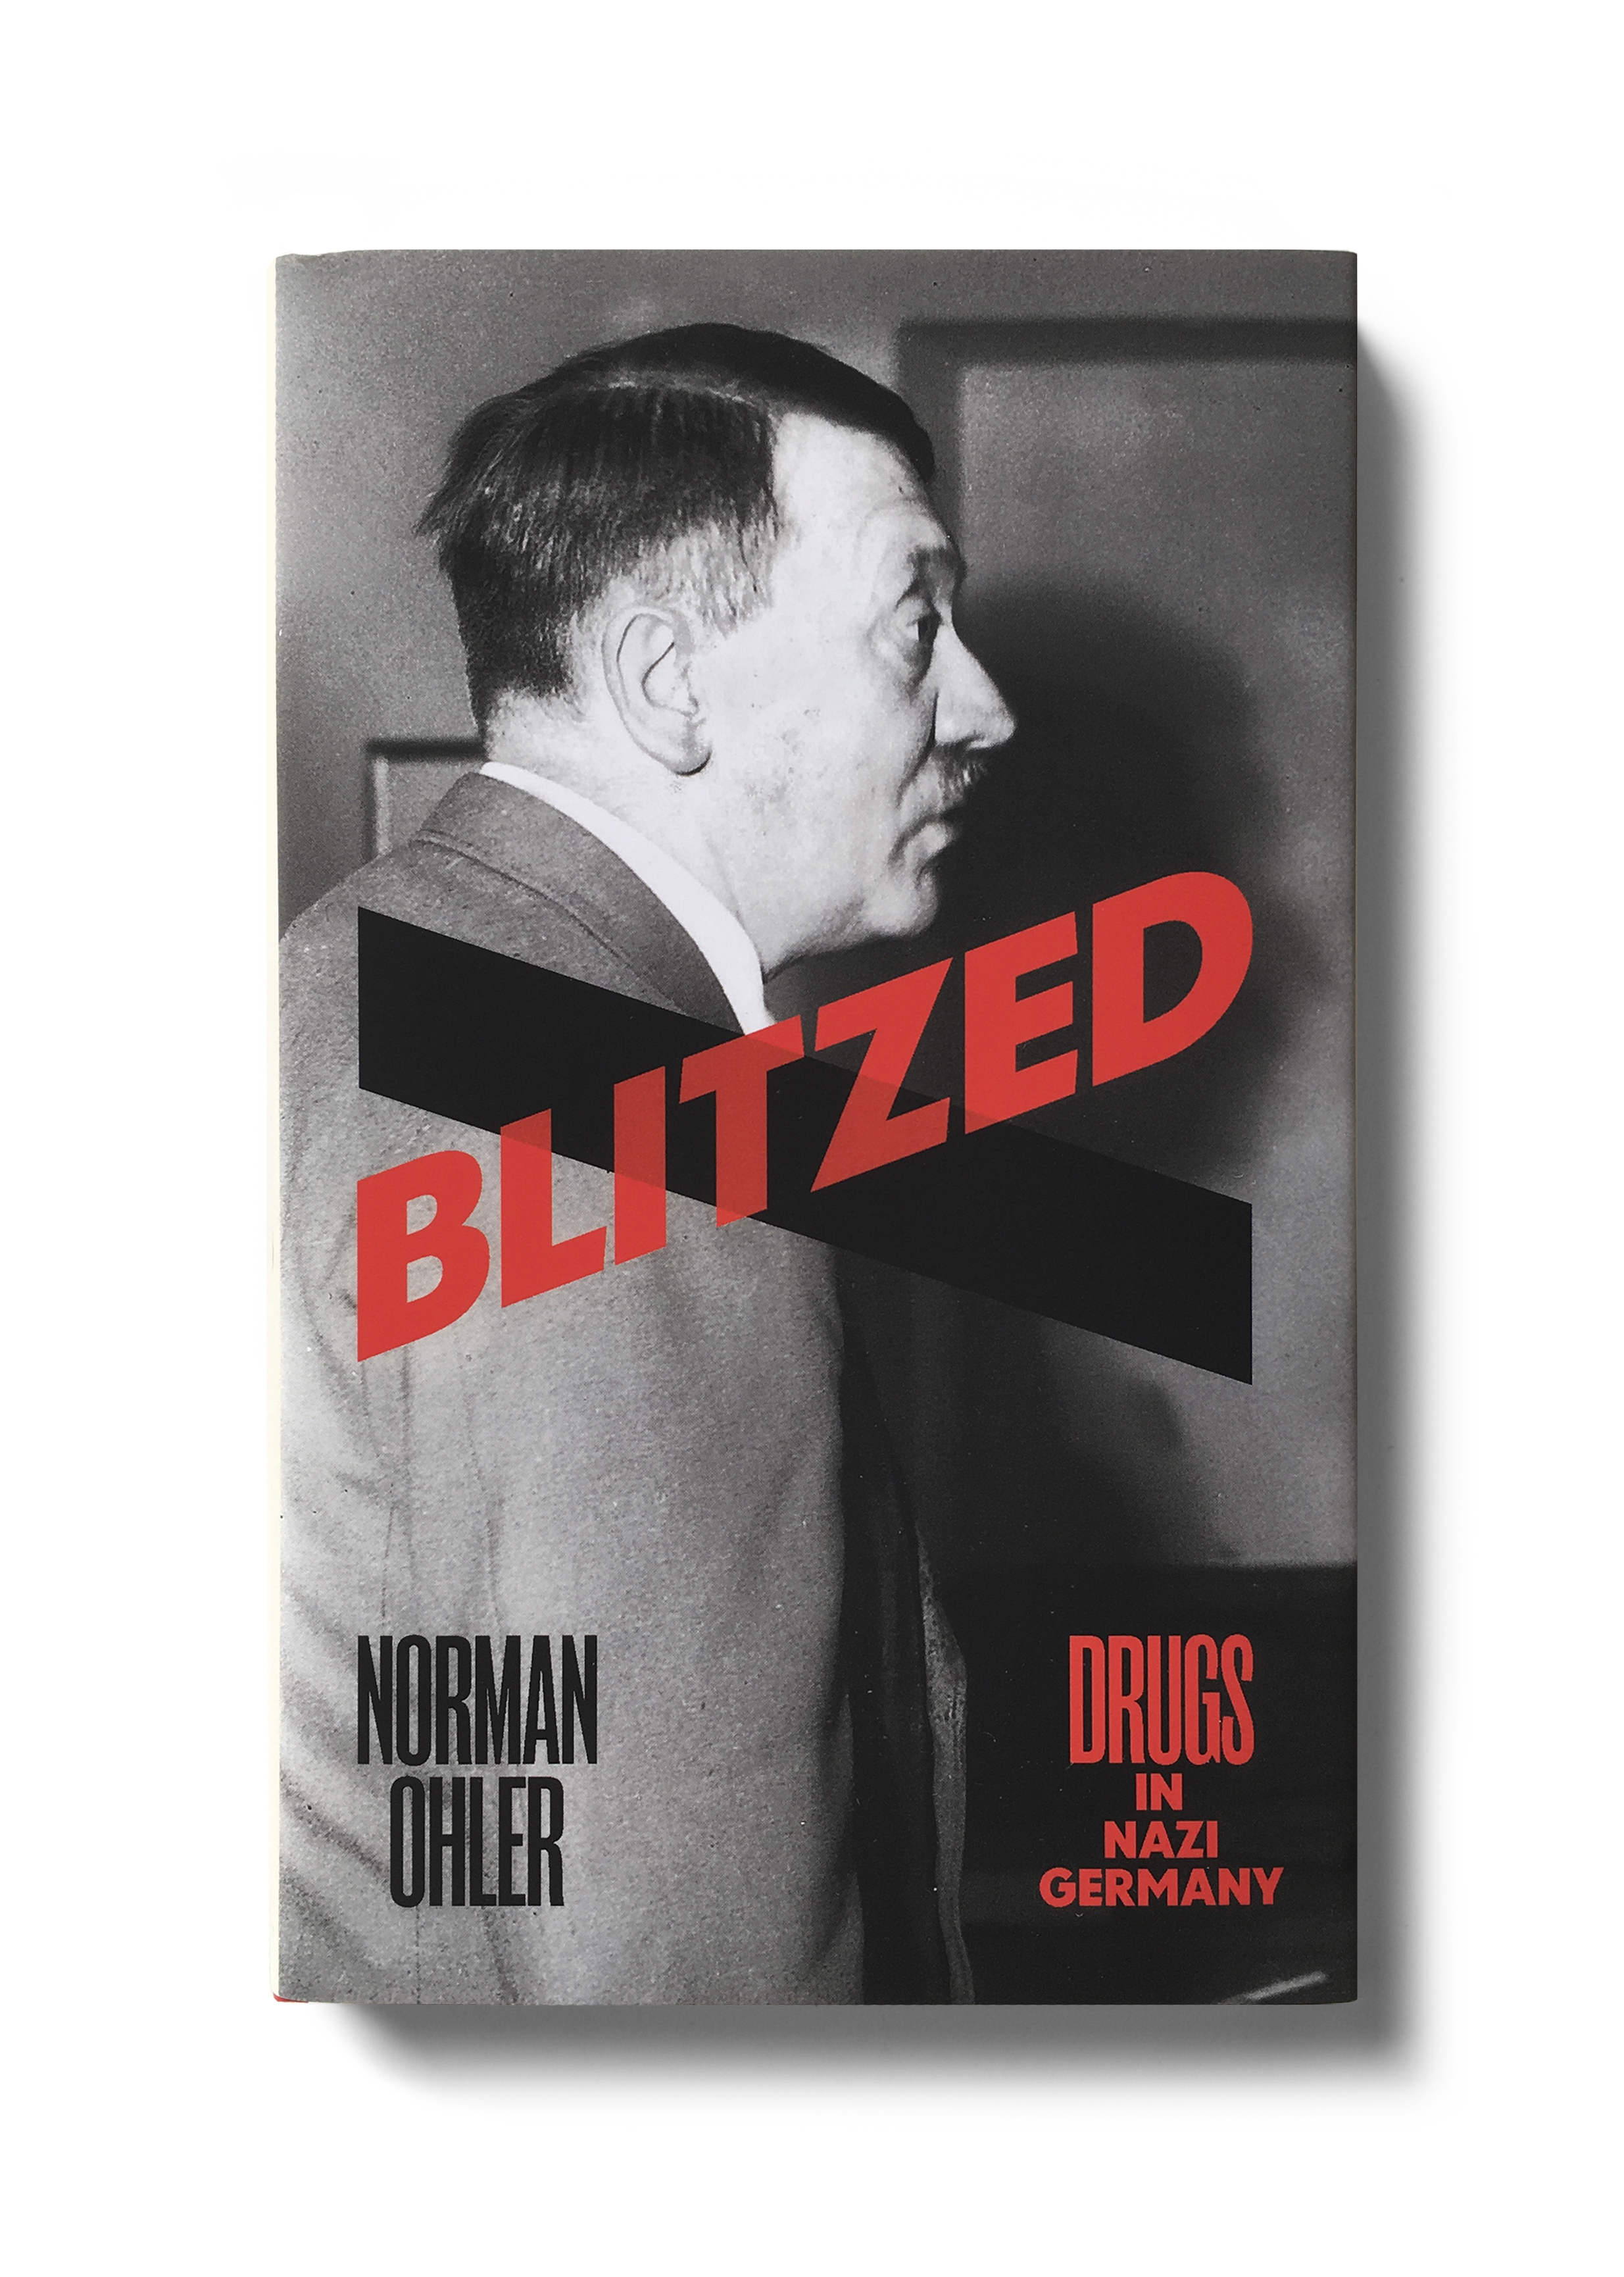  Blitzed by Norman Ohler -&nbsp; Design: Jim Stoddart 